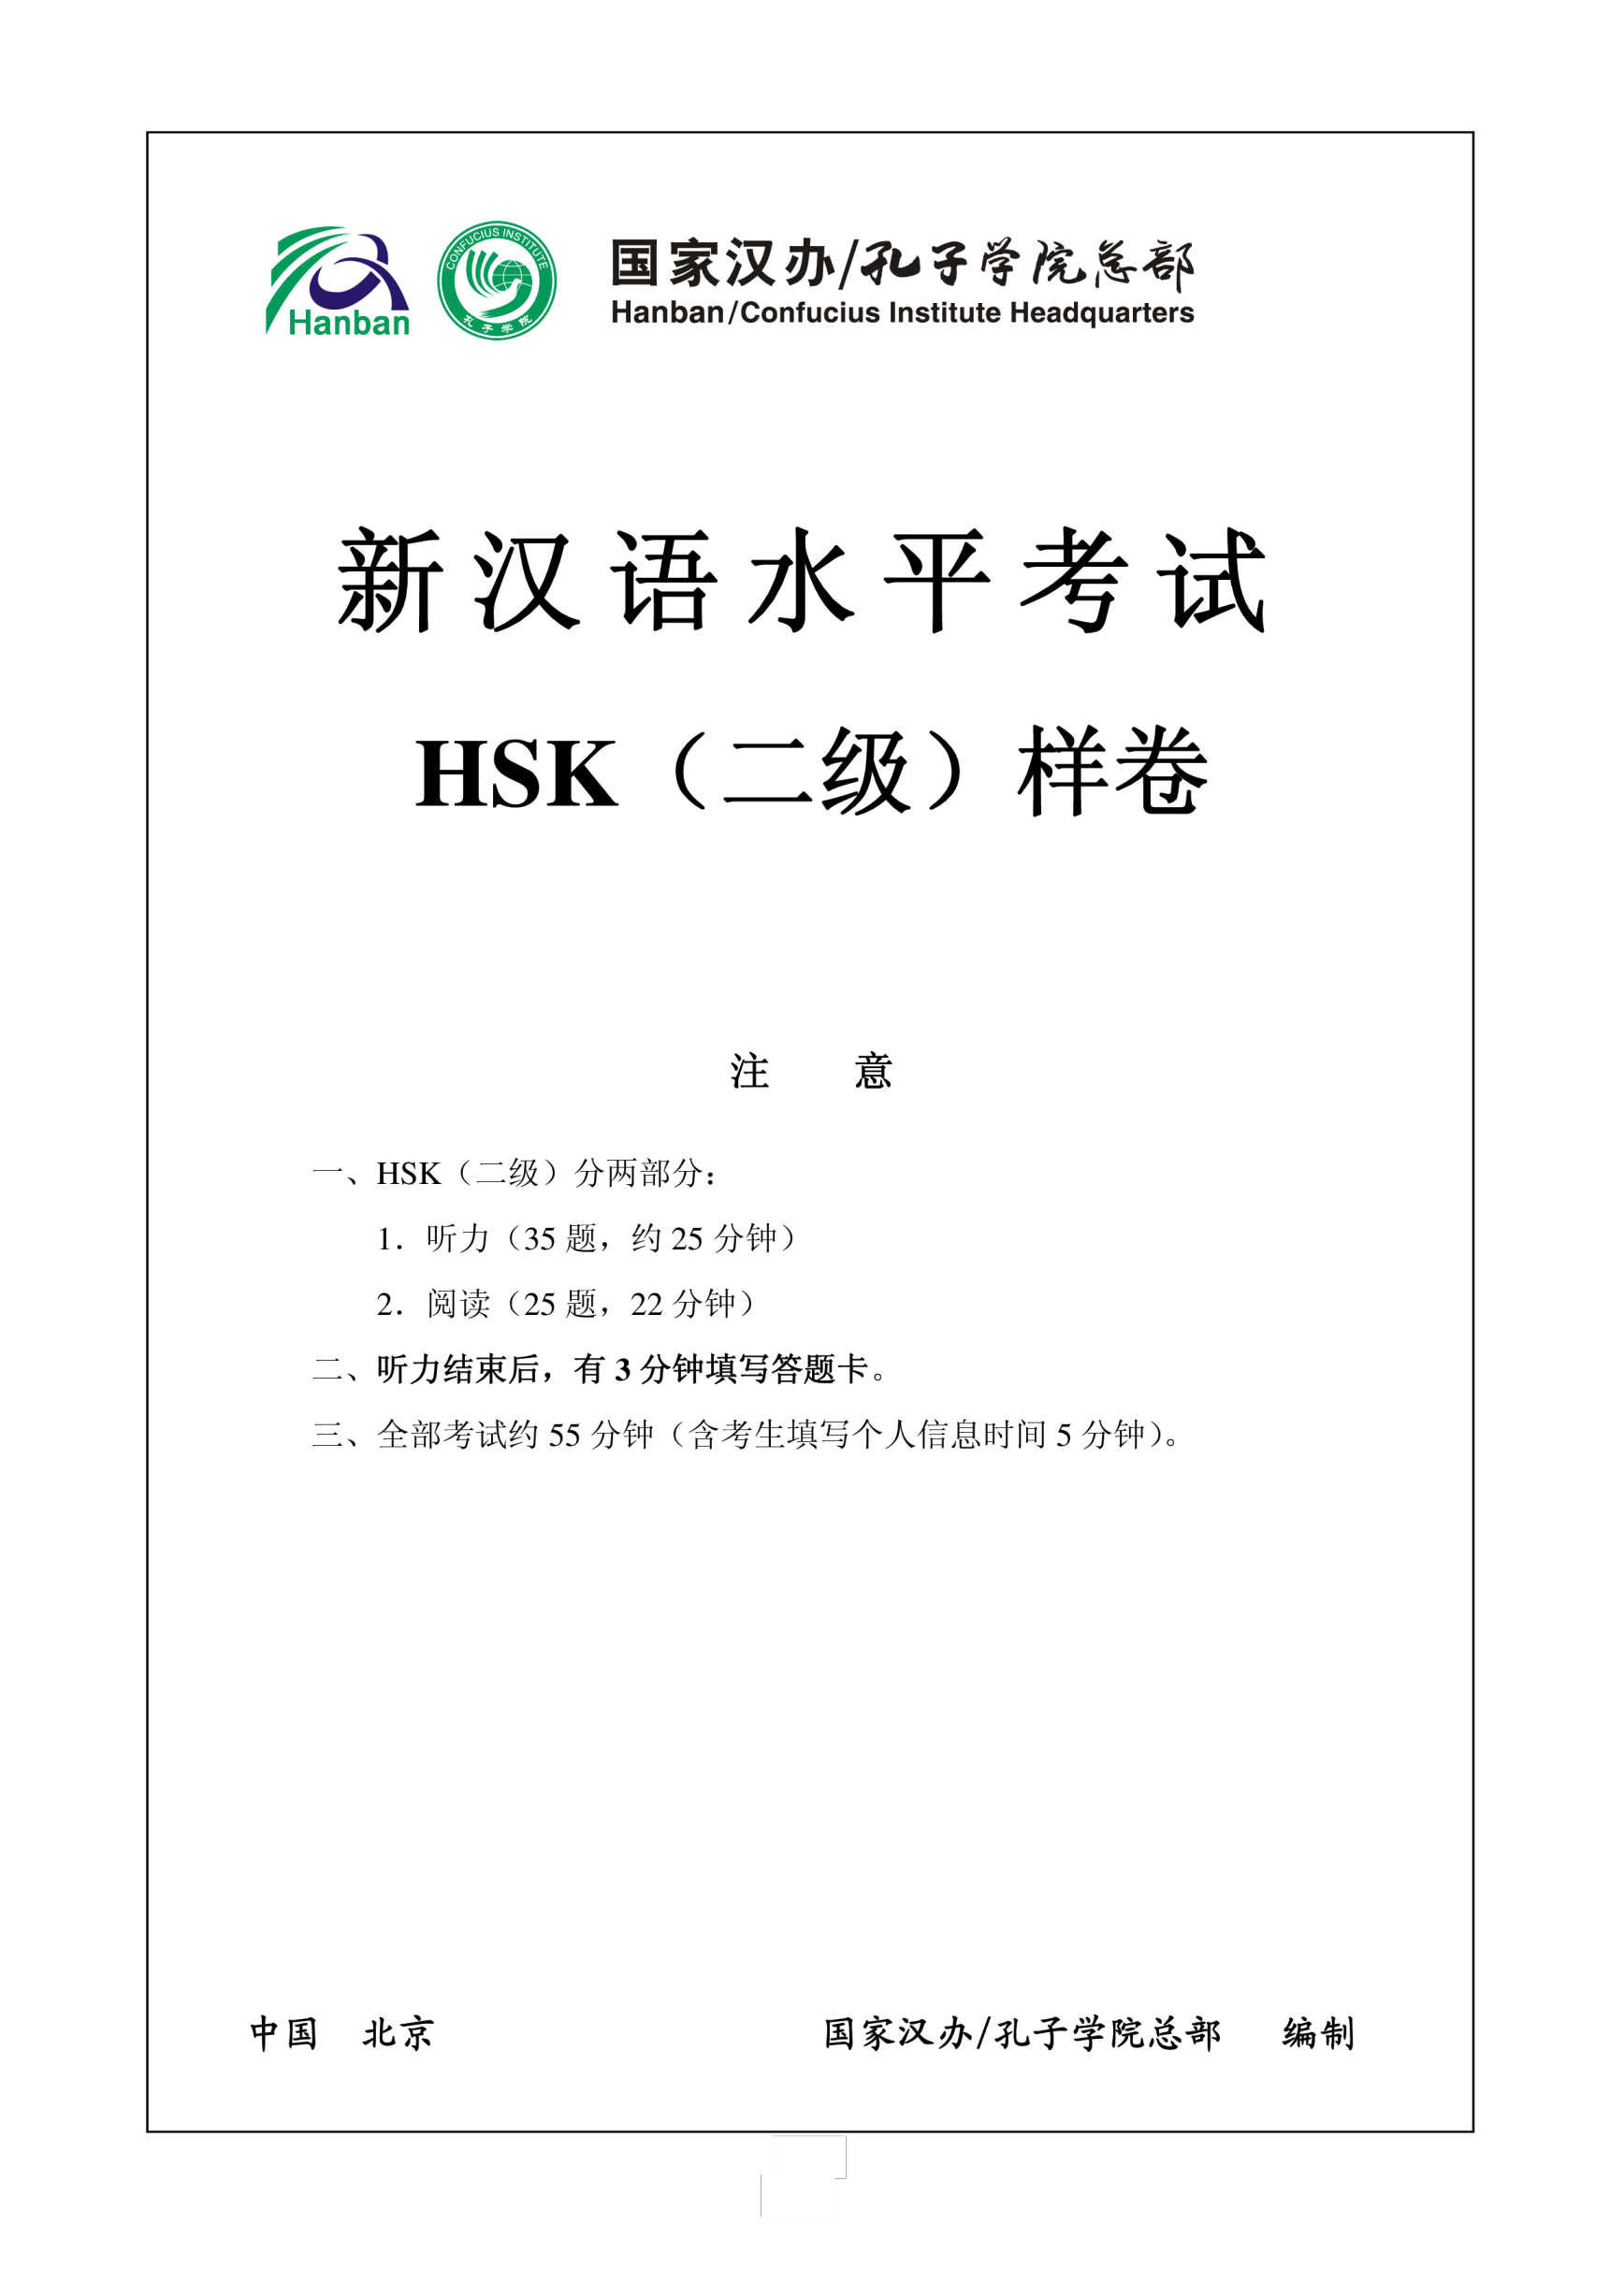 Vorschaubild der VorlageHSK2 Chinese Exam including Answers # HSK2 2-1